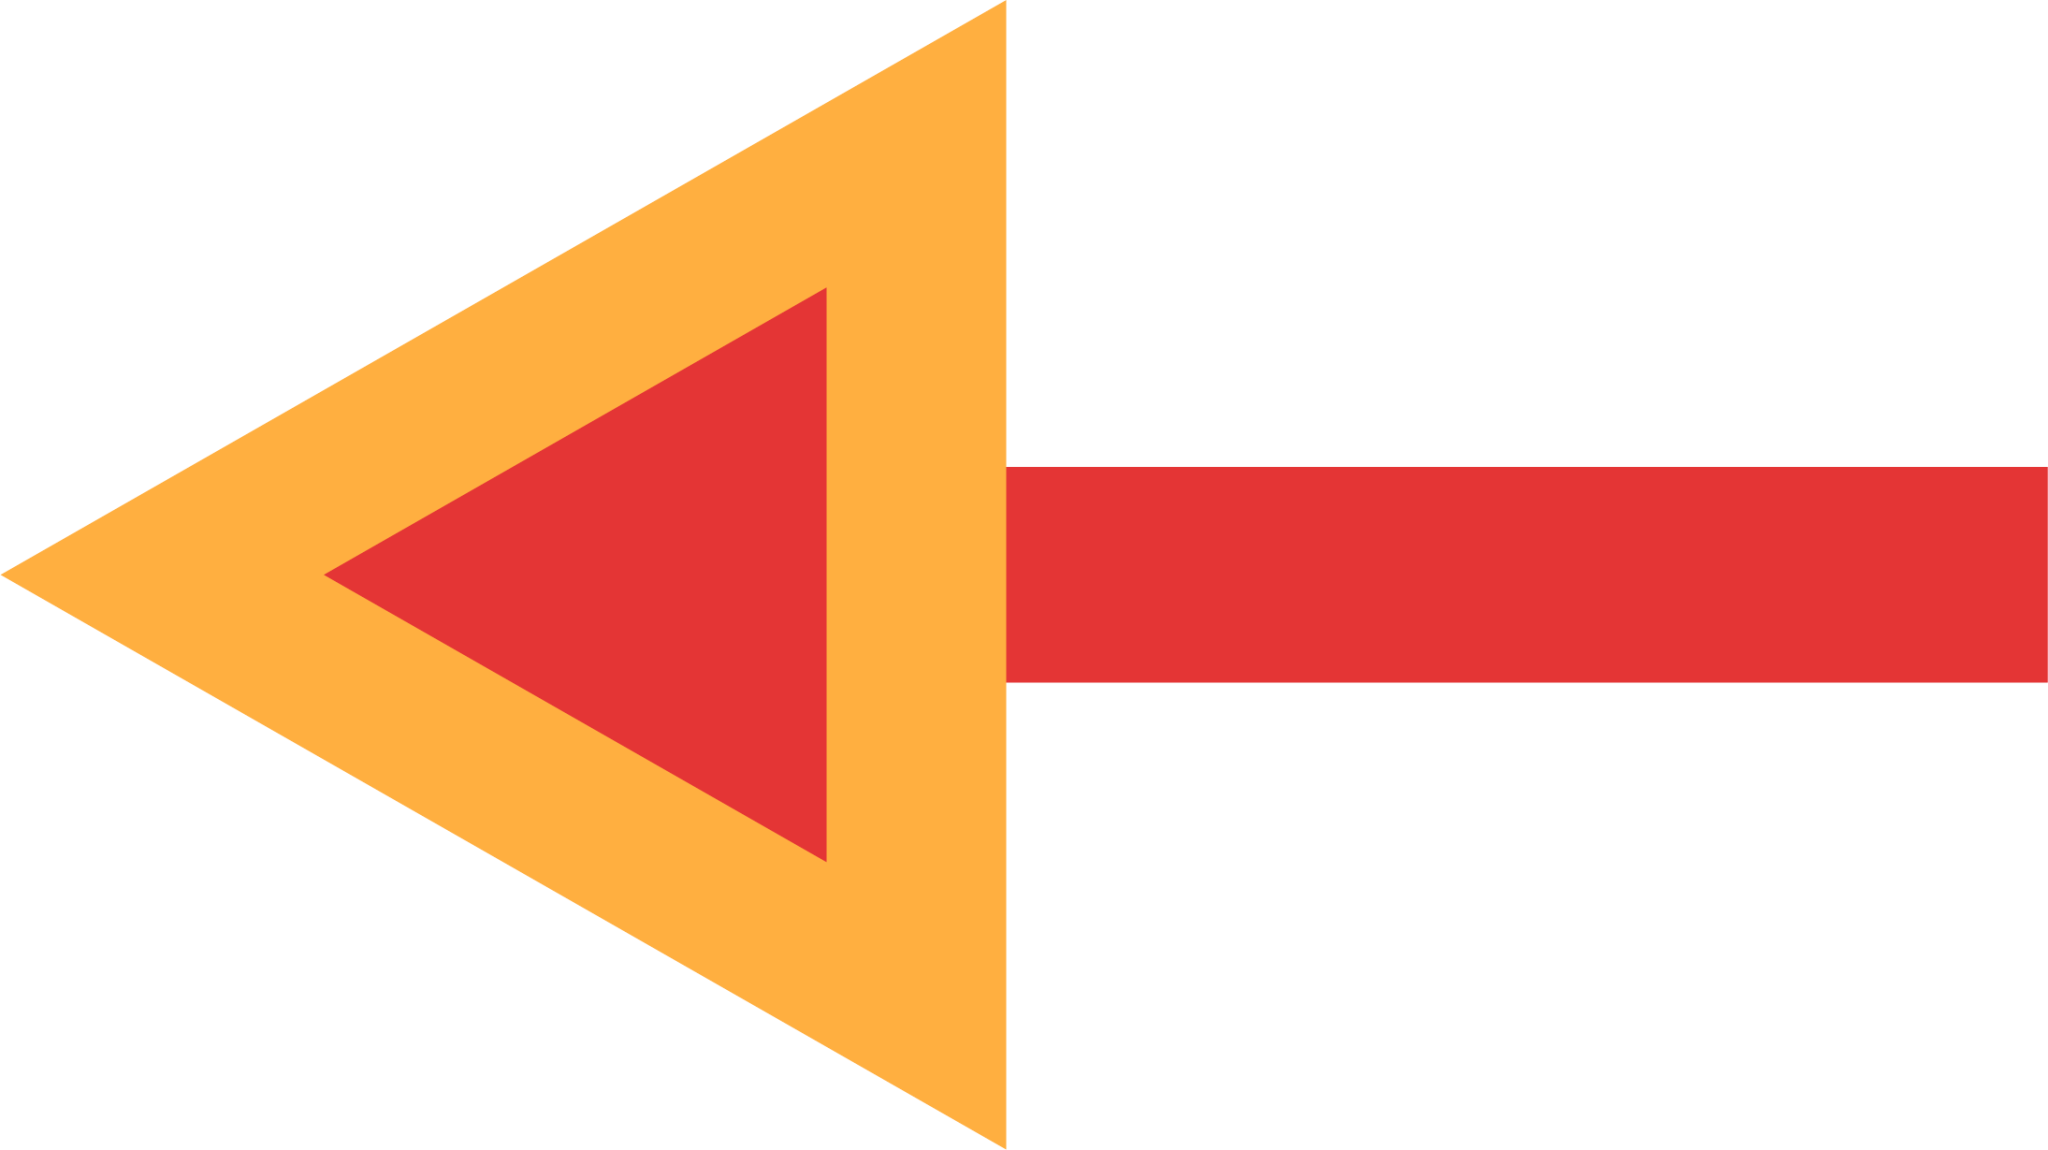 red arrow left icon